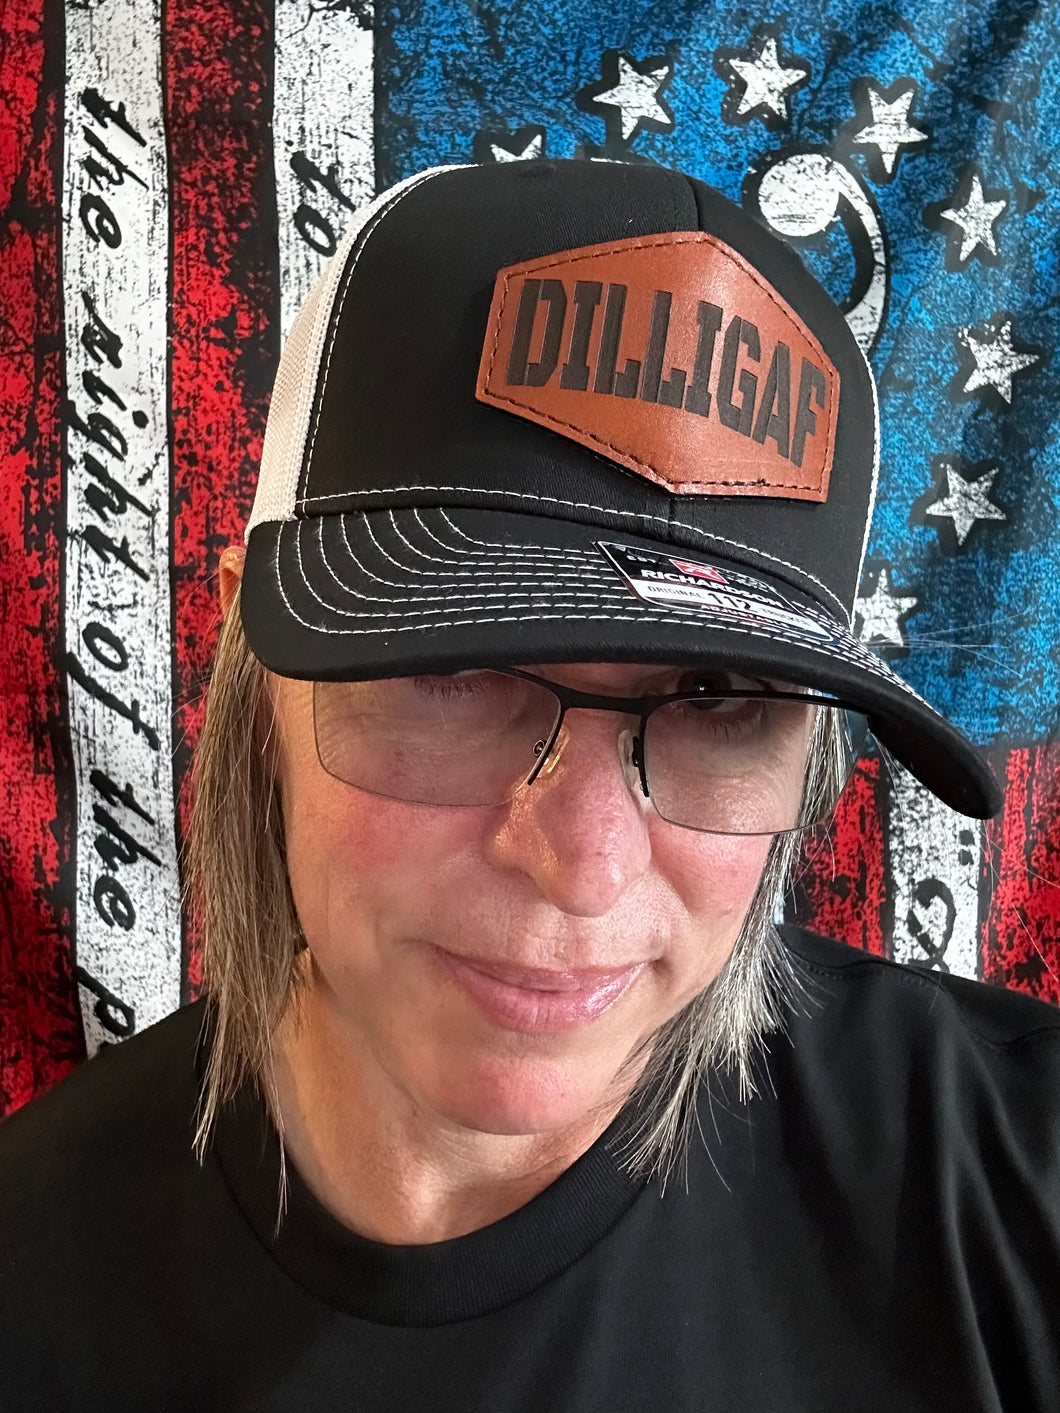 DILLIGAF Trucker Hats